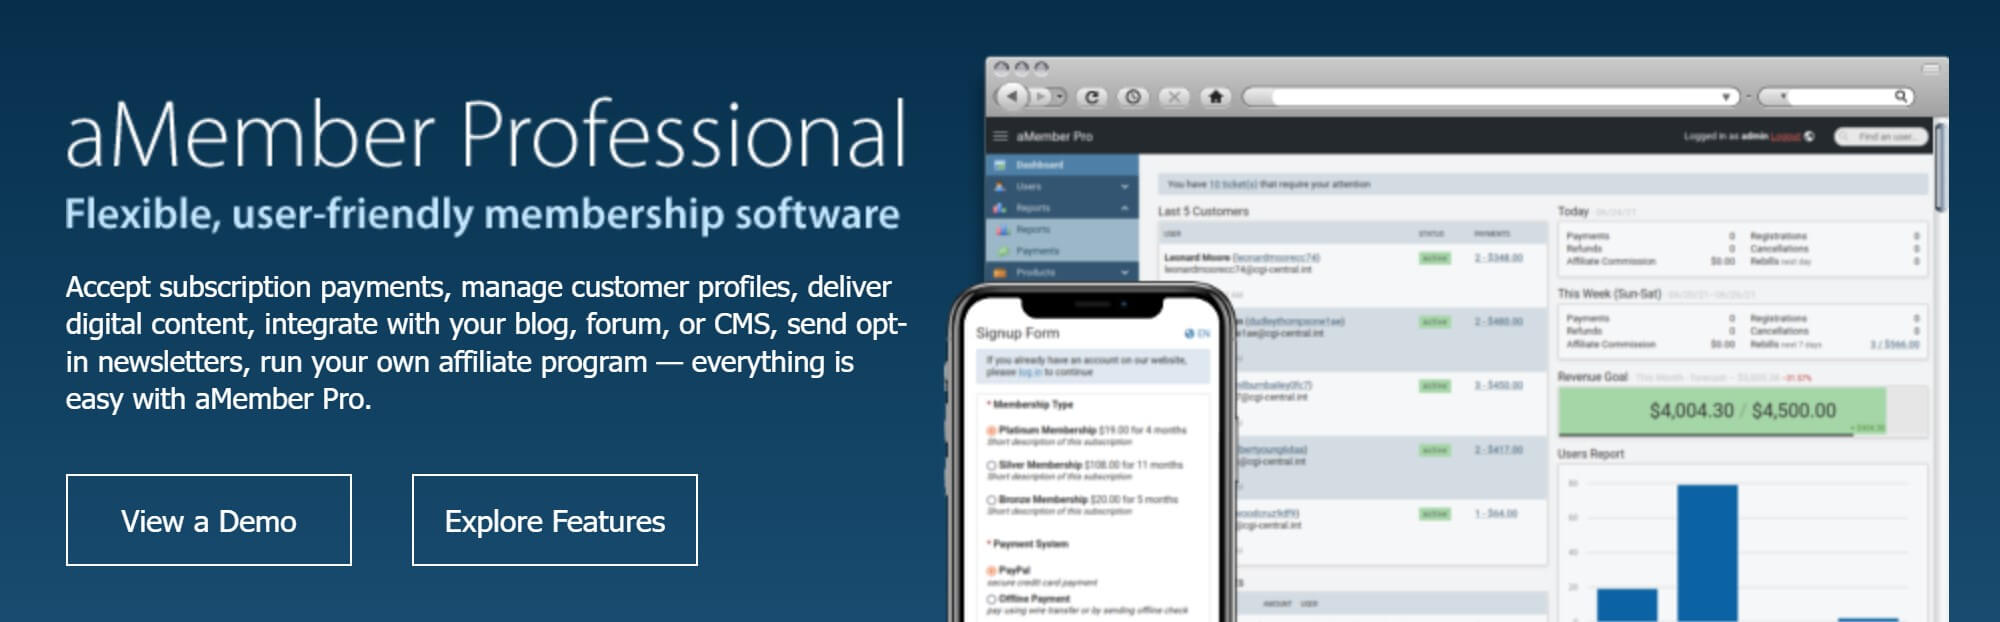 amember professional membership software desktop and mobile examples